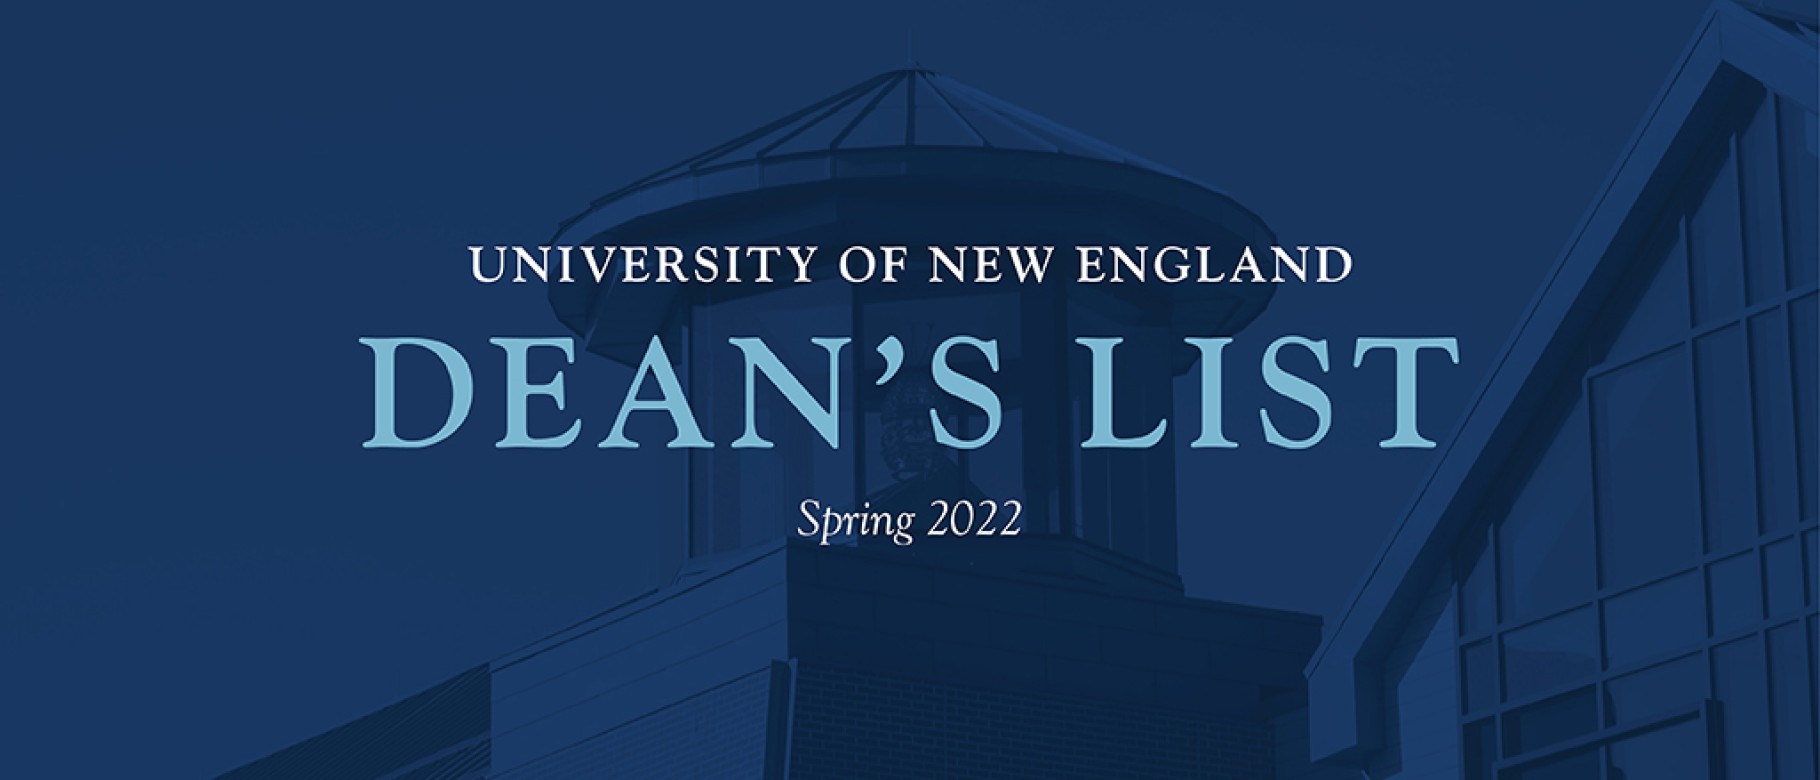 UNE announces Spring 2022 Dean's List